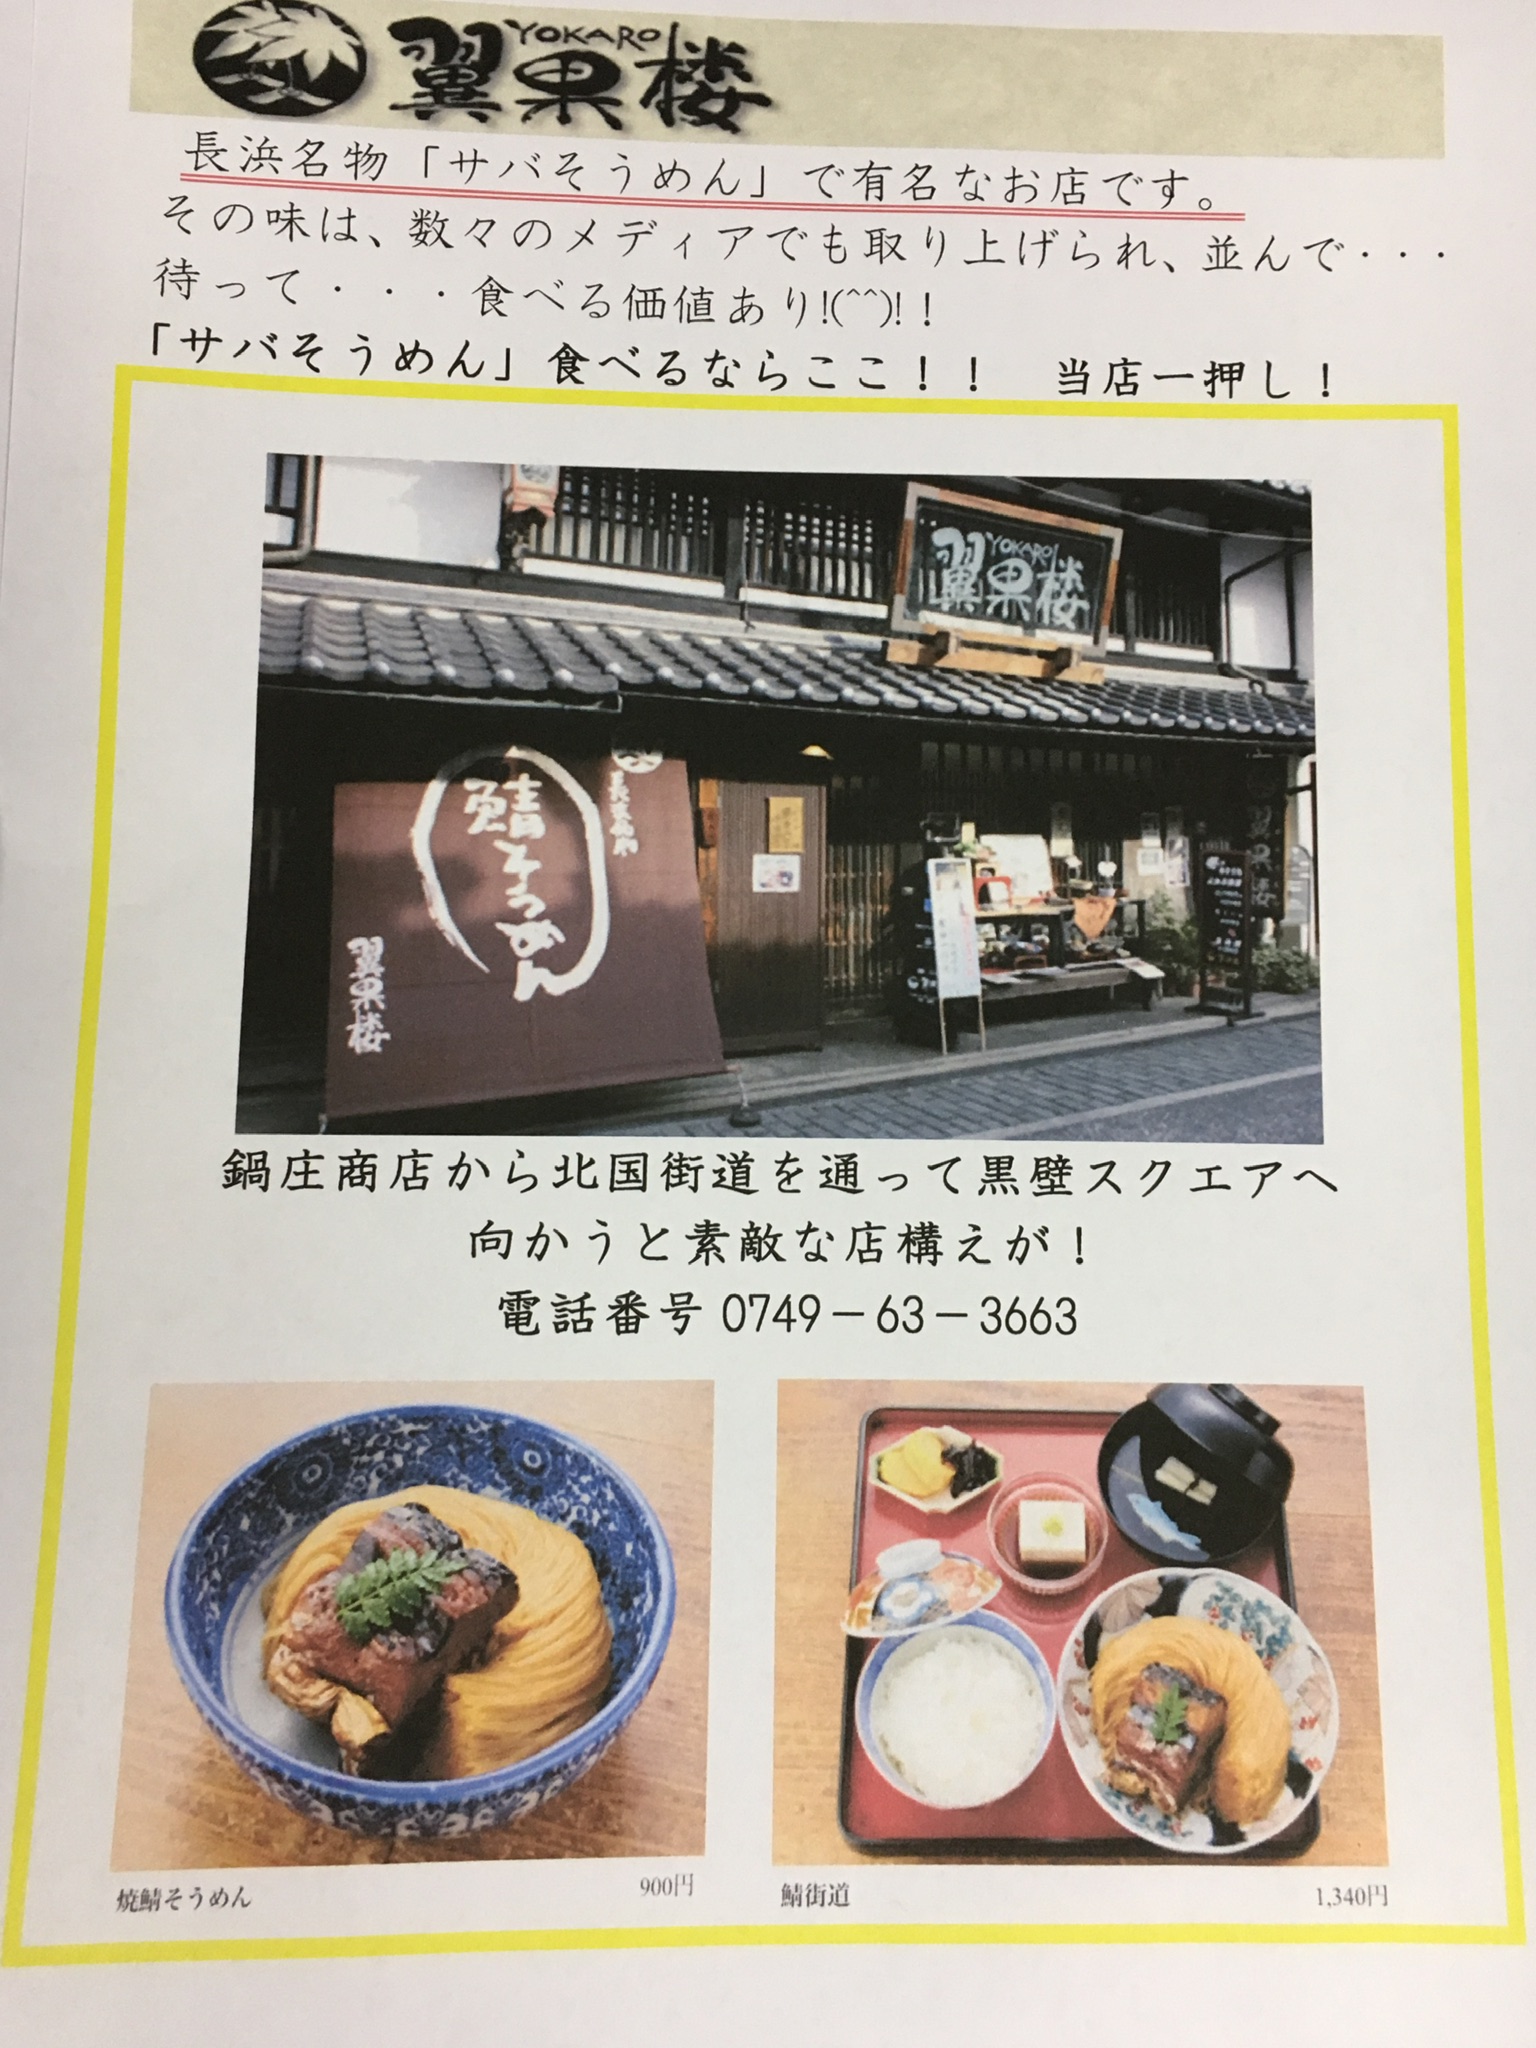 今日は長浜で有名な鯖そうめんのお店をご紹介。( ´ ▽ ` )